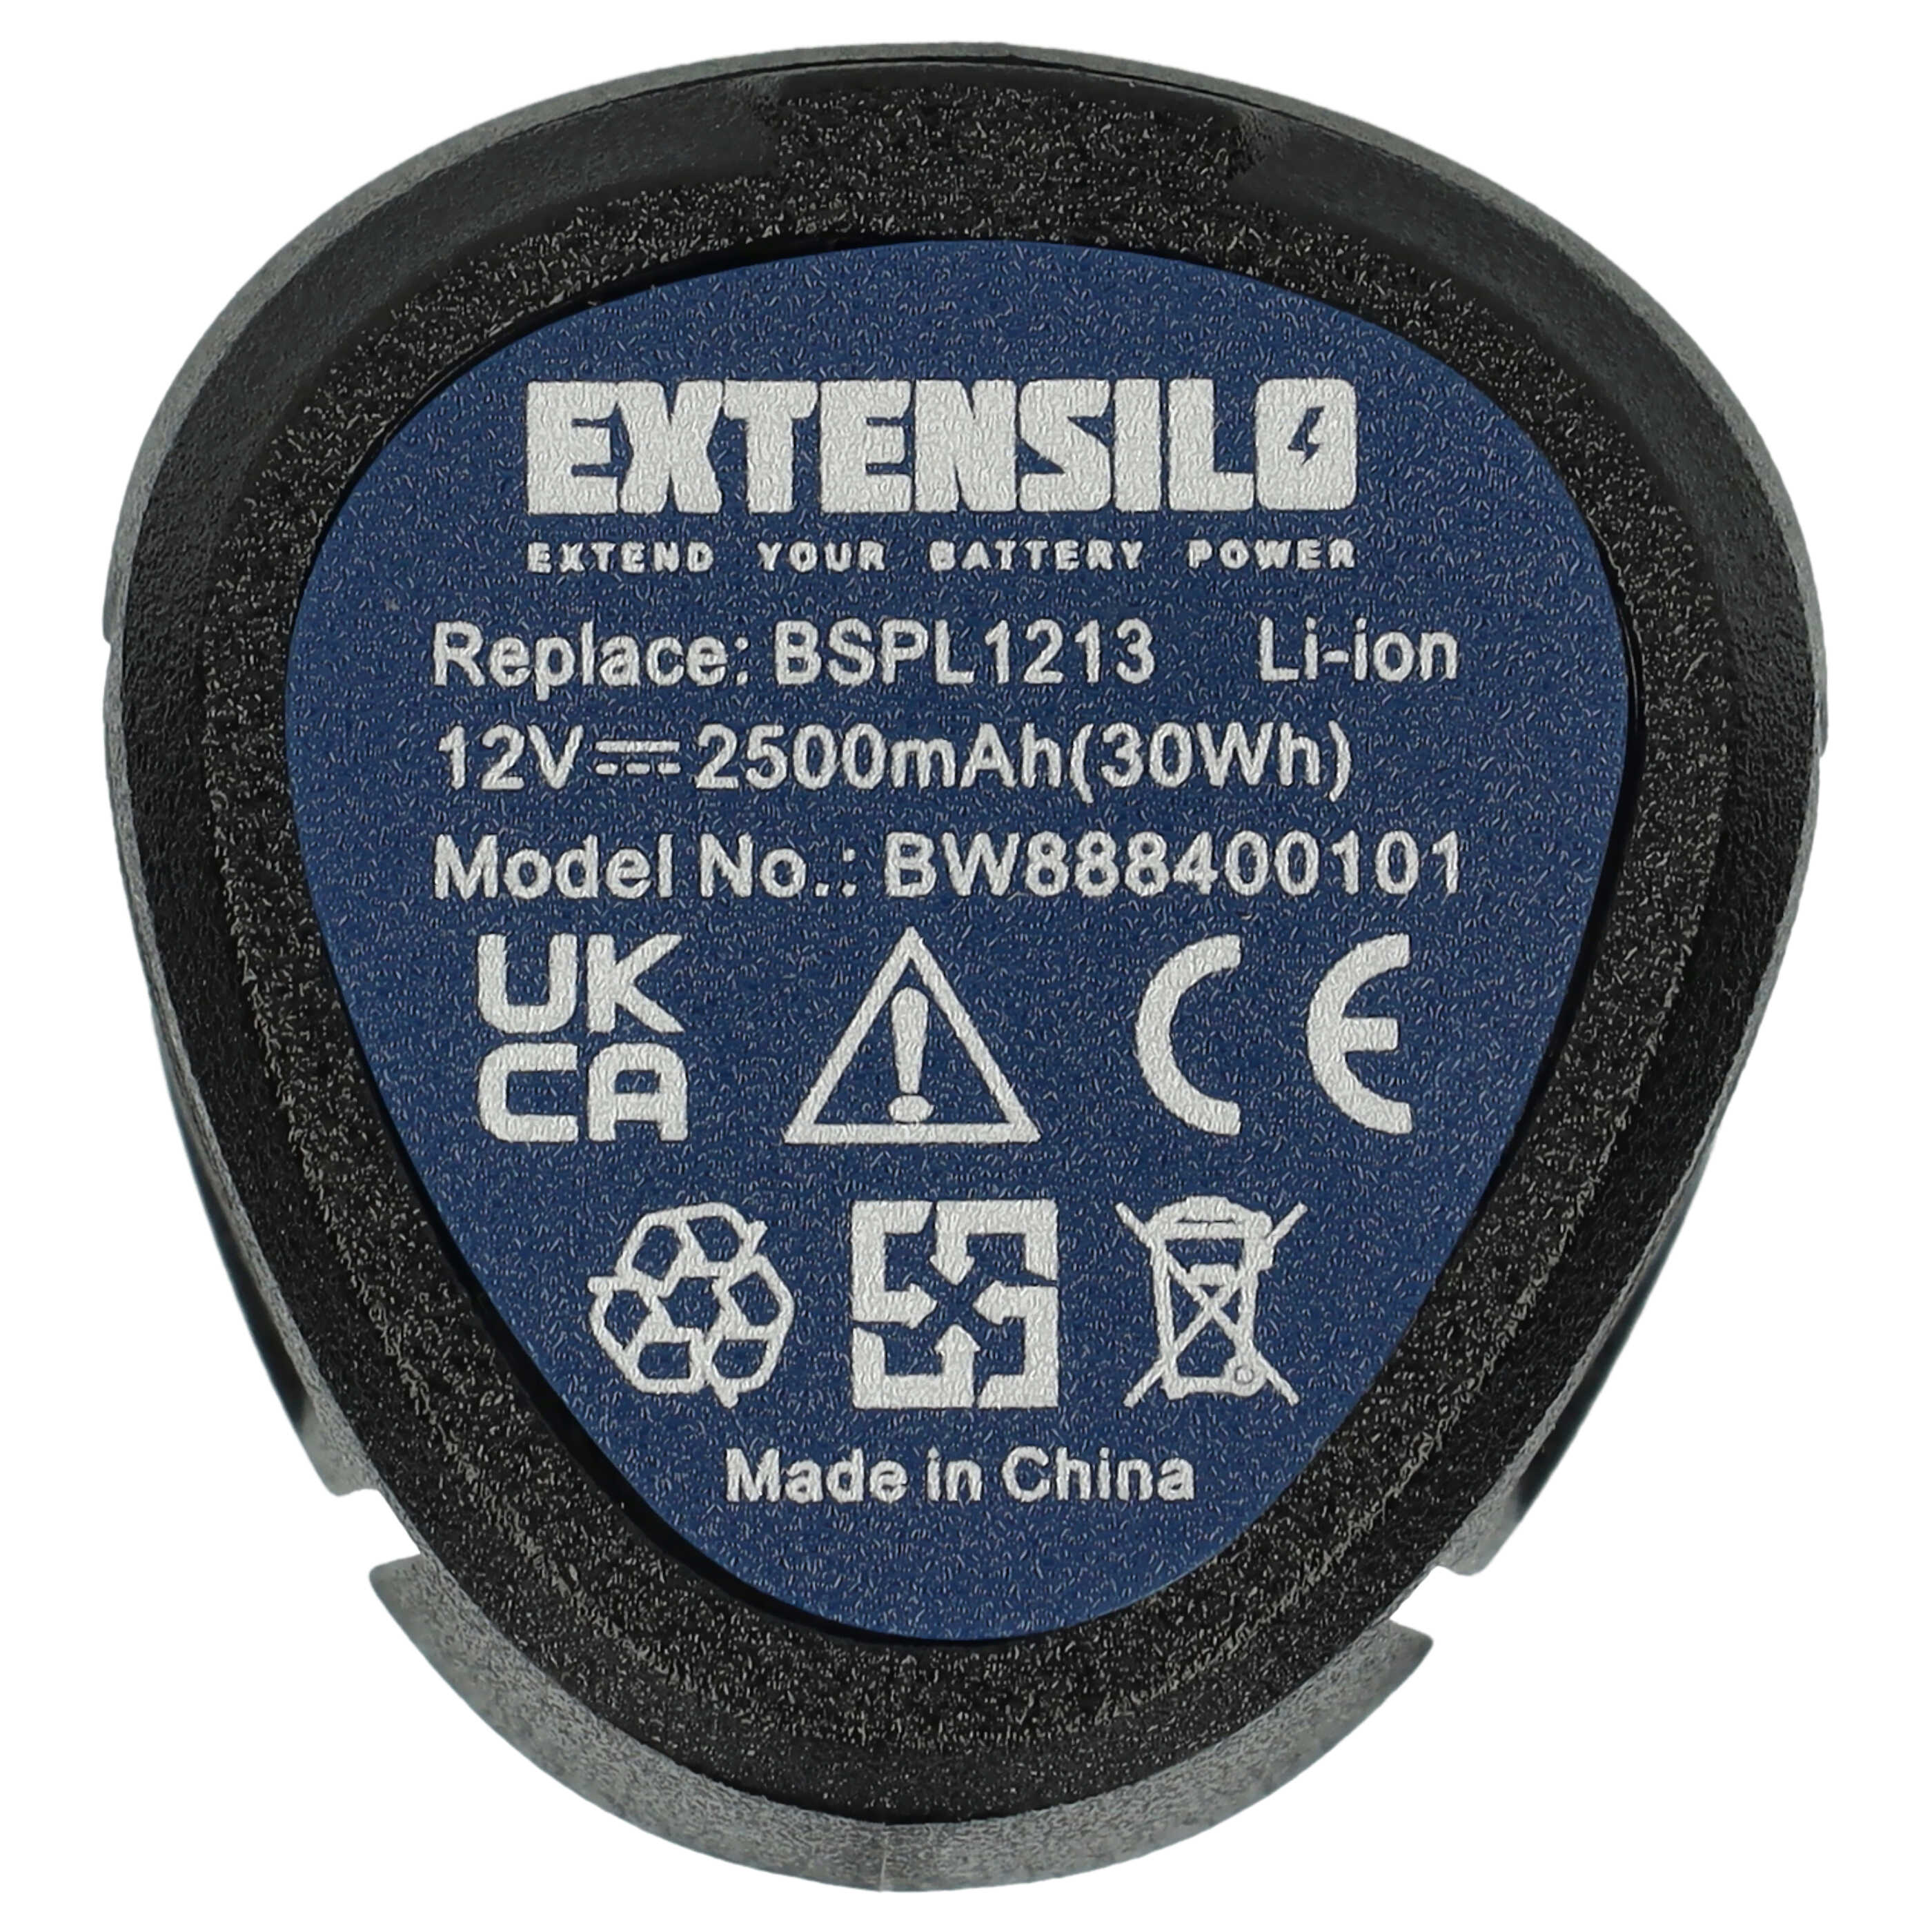 Batería reemplaza Hendi 936795 para herramienta - 2500 mAh, 12 V, Li-Ion